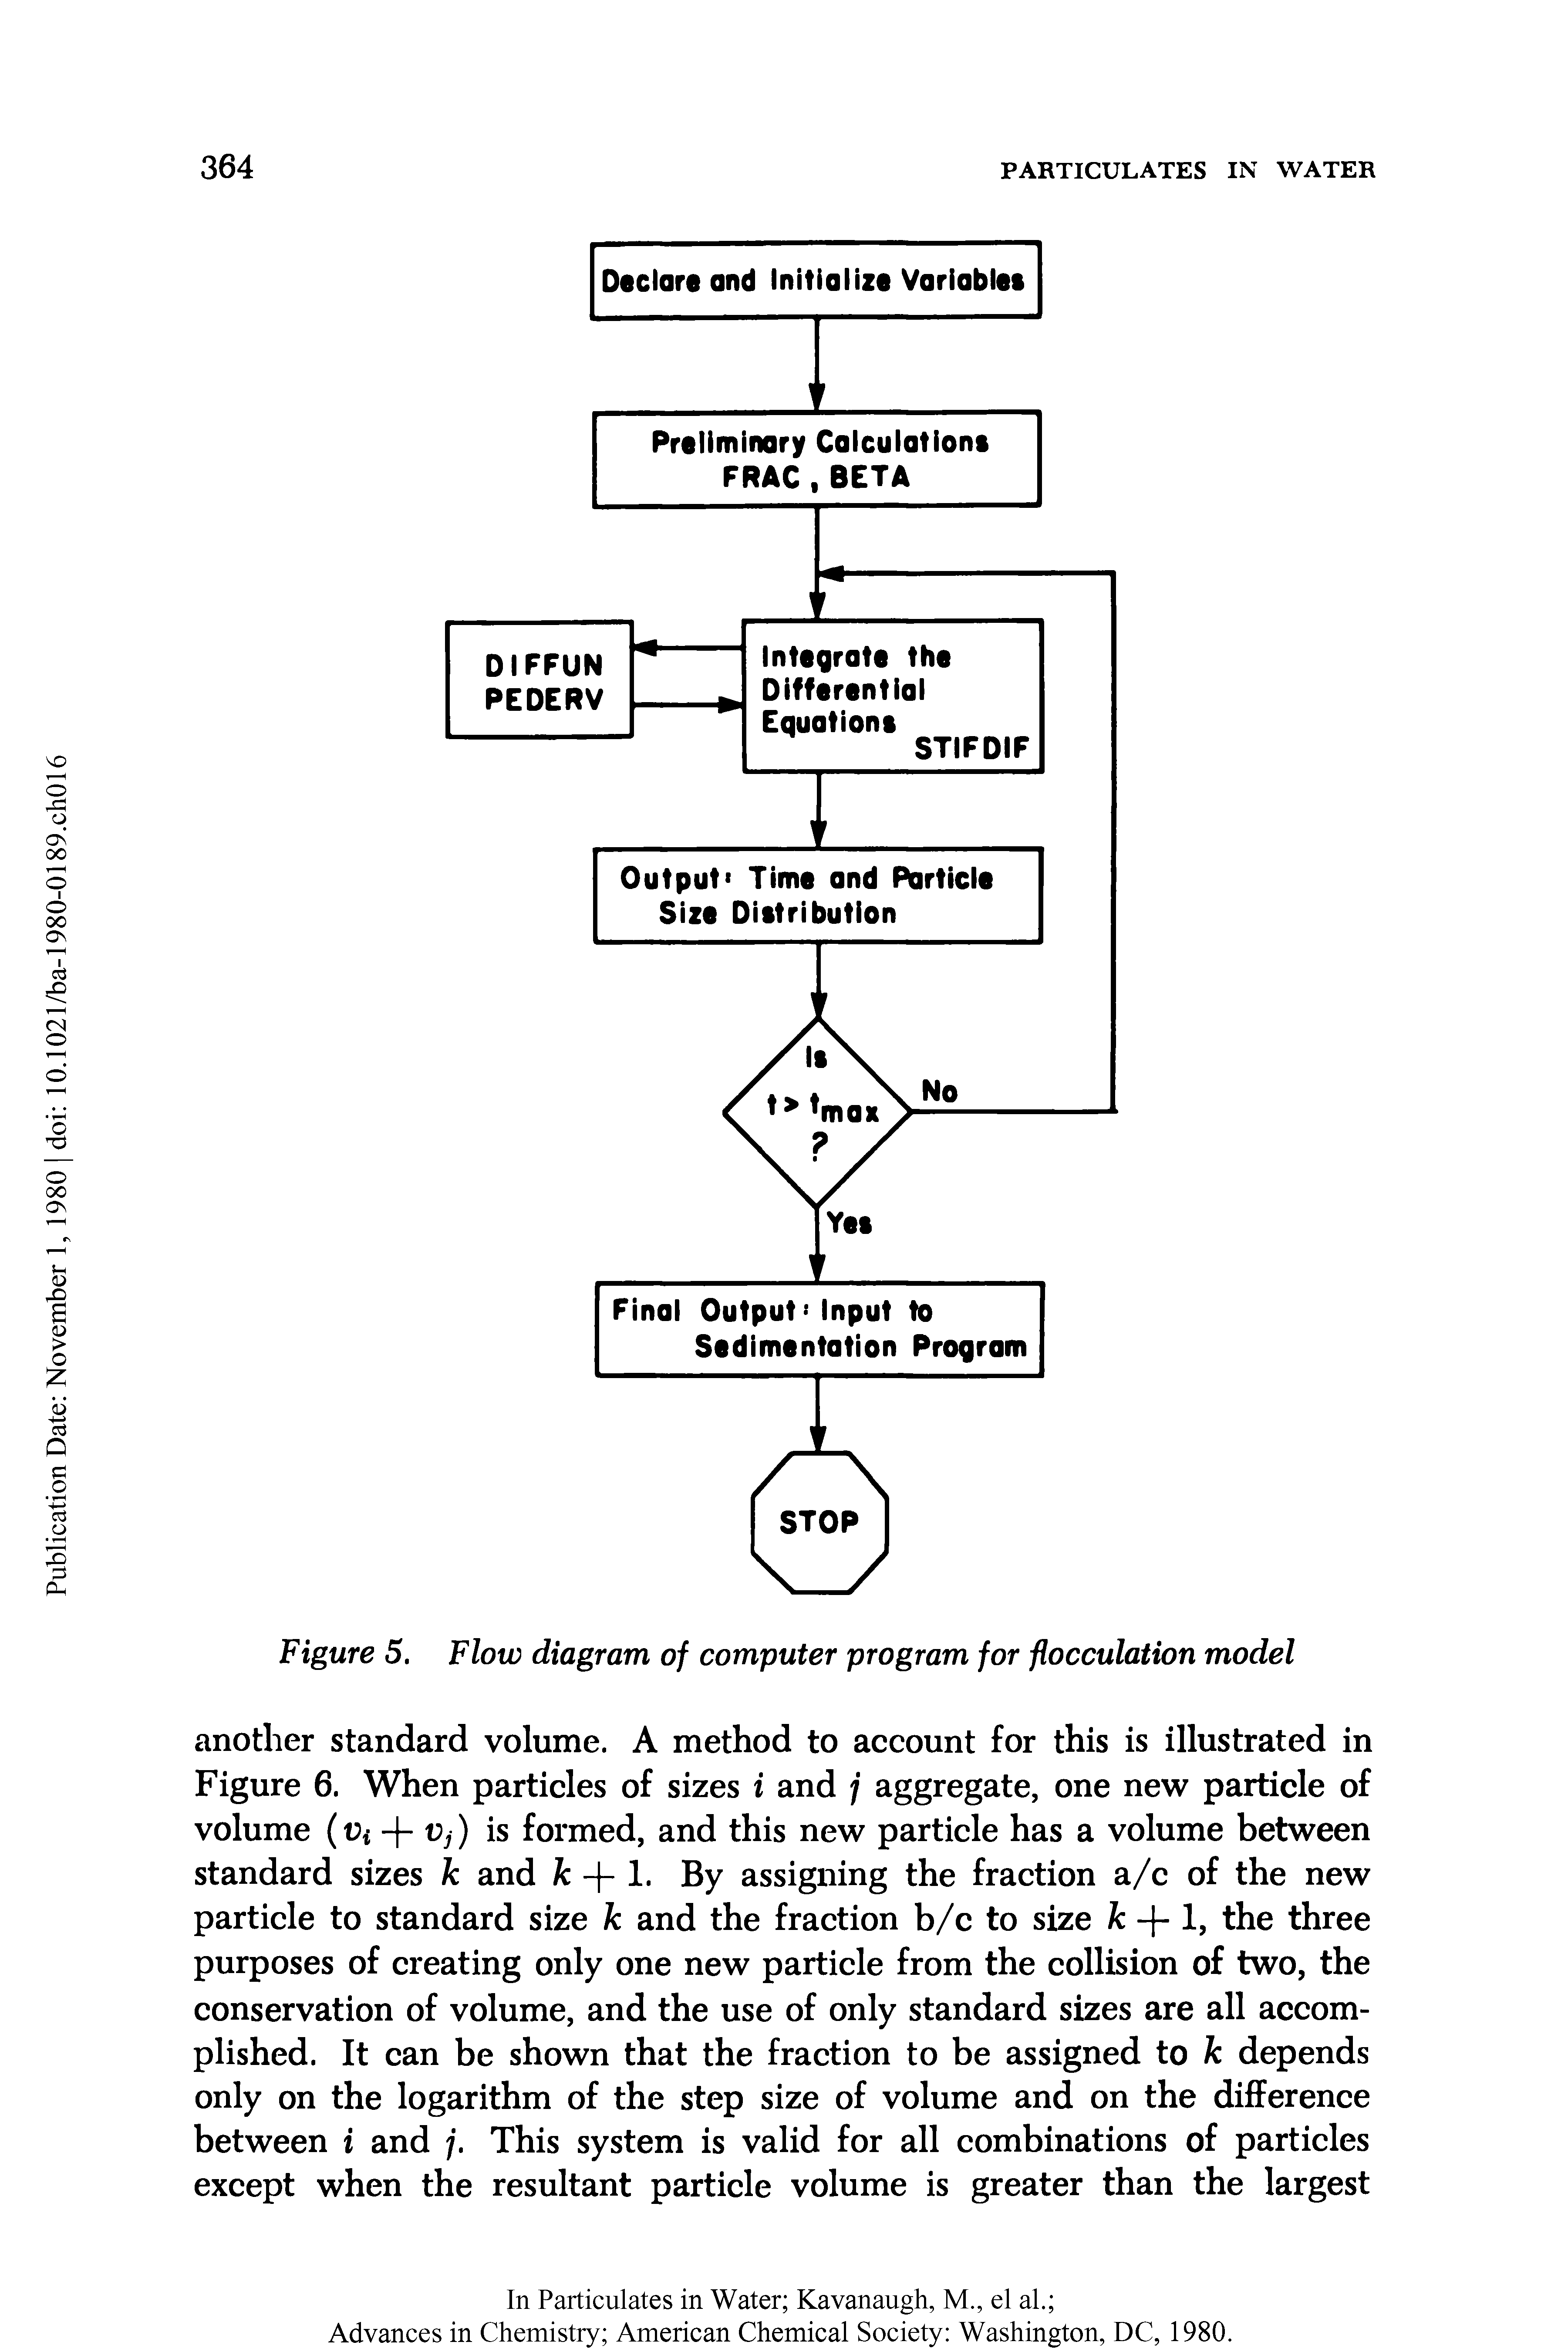 Figure 5. Flow diagram of computer program for flocculation model...